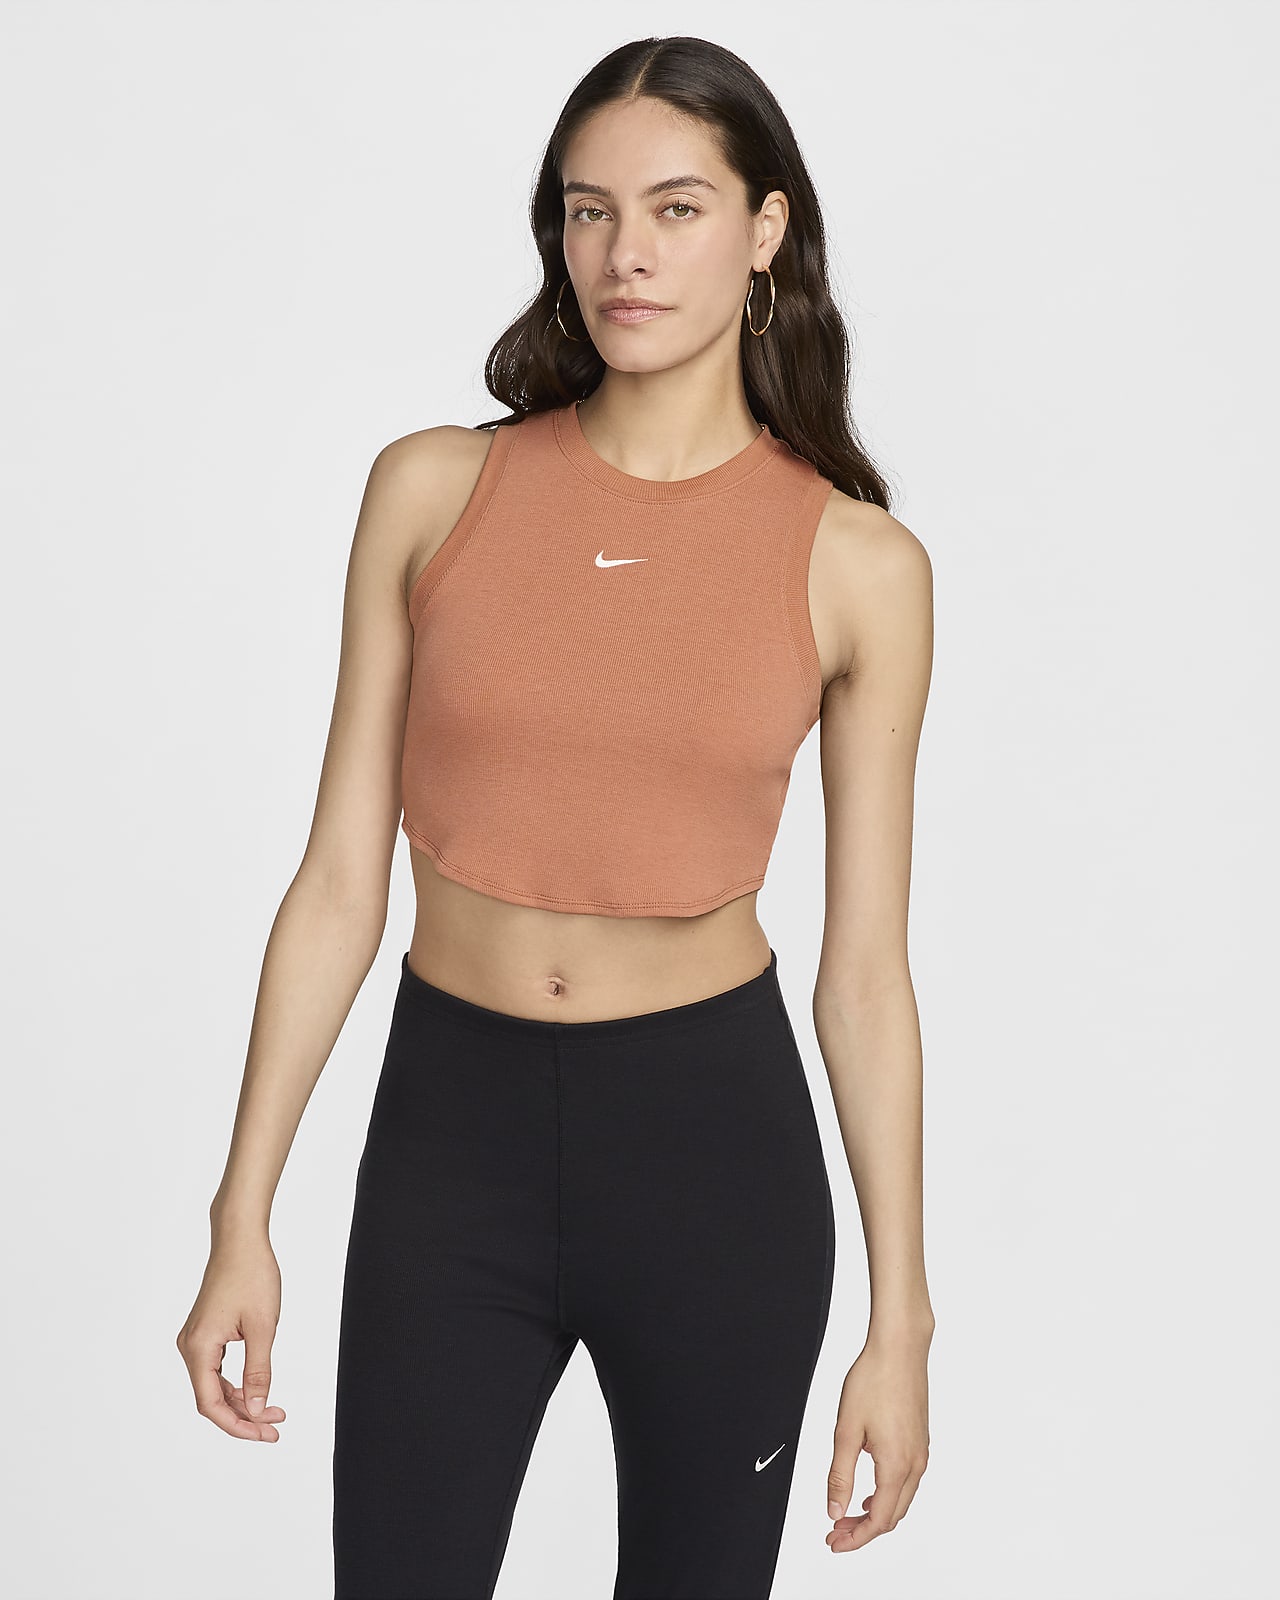 Canotta corta e aderente a mini costine Nike Sportswear Chill Knit – Donna